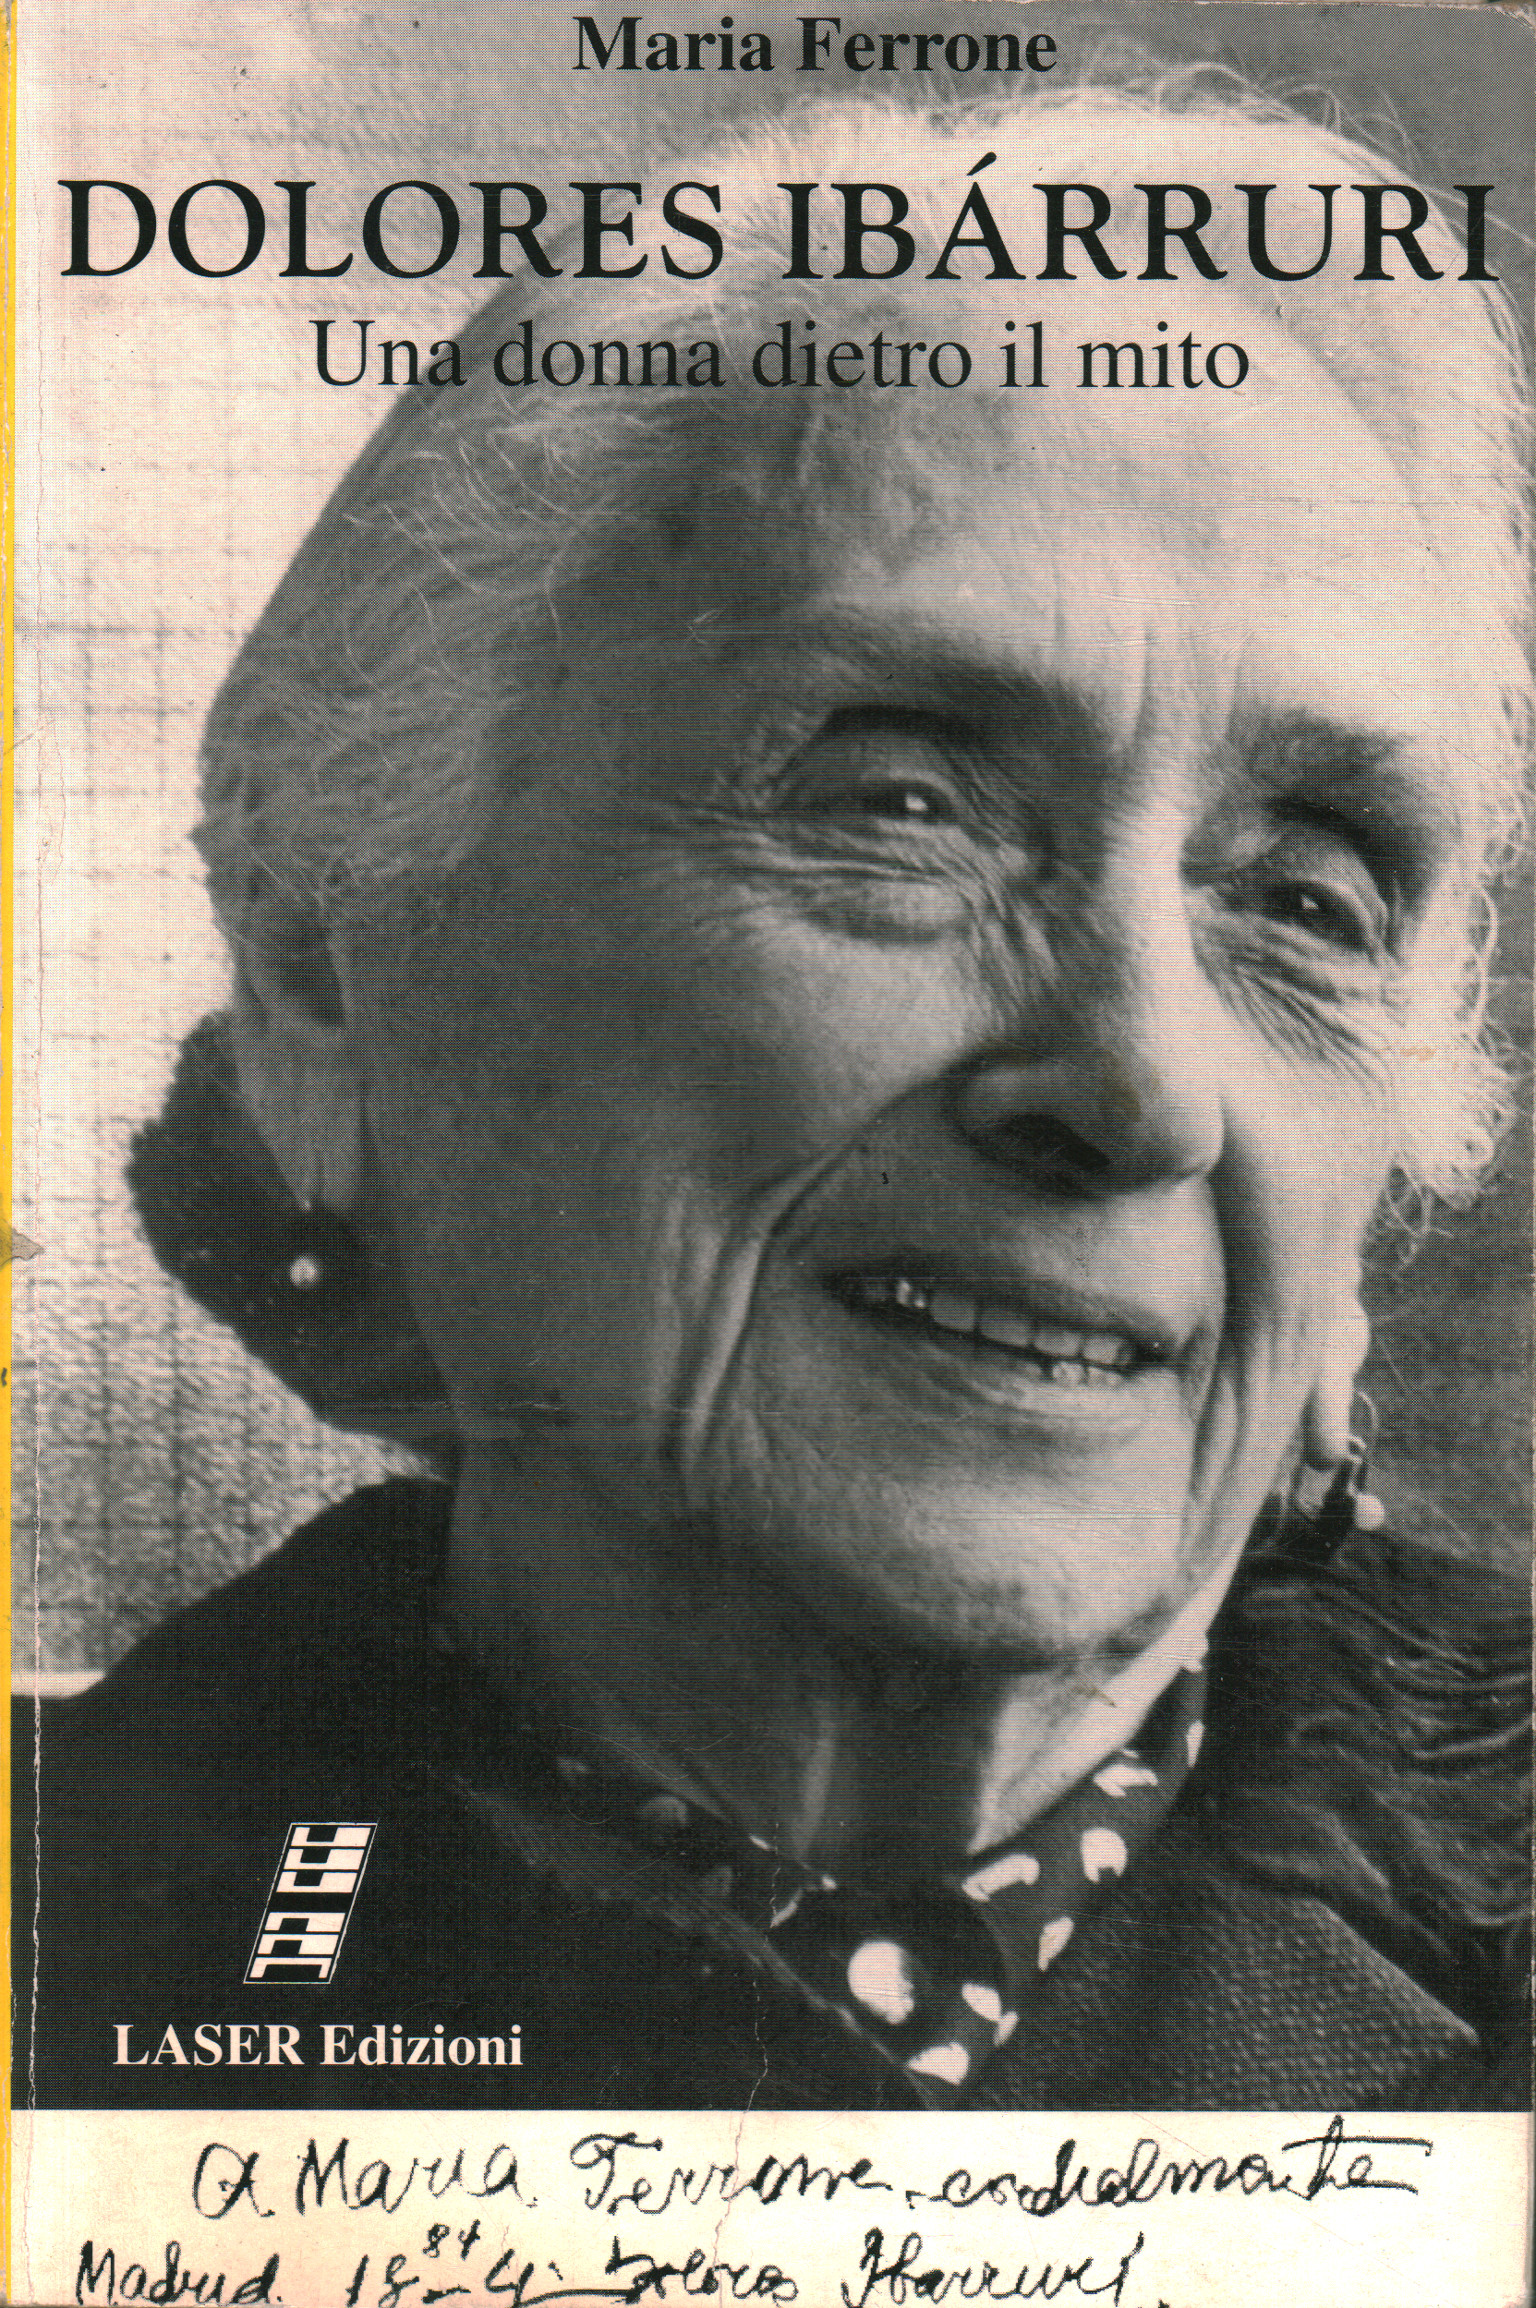 Dolores Ibárruri. A woman behind